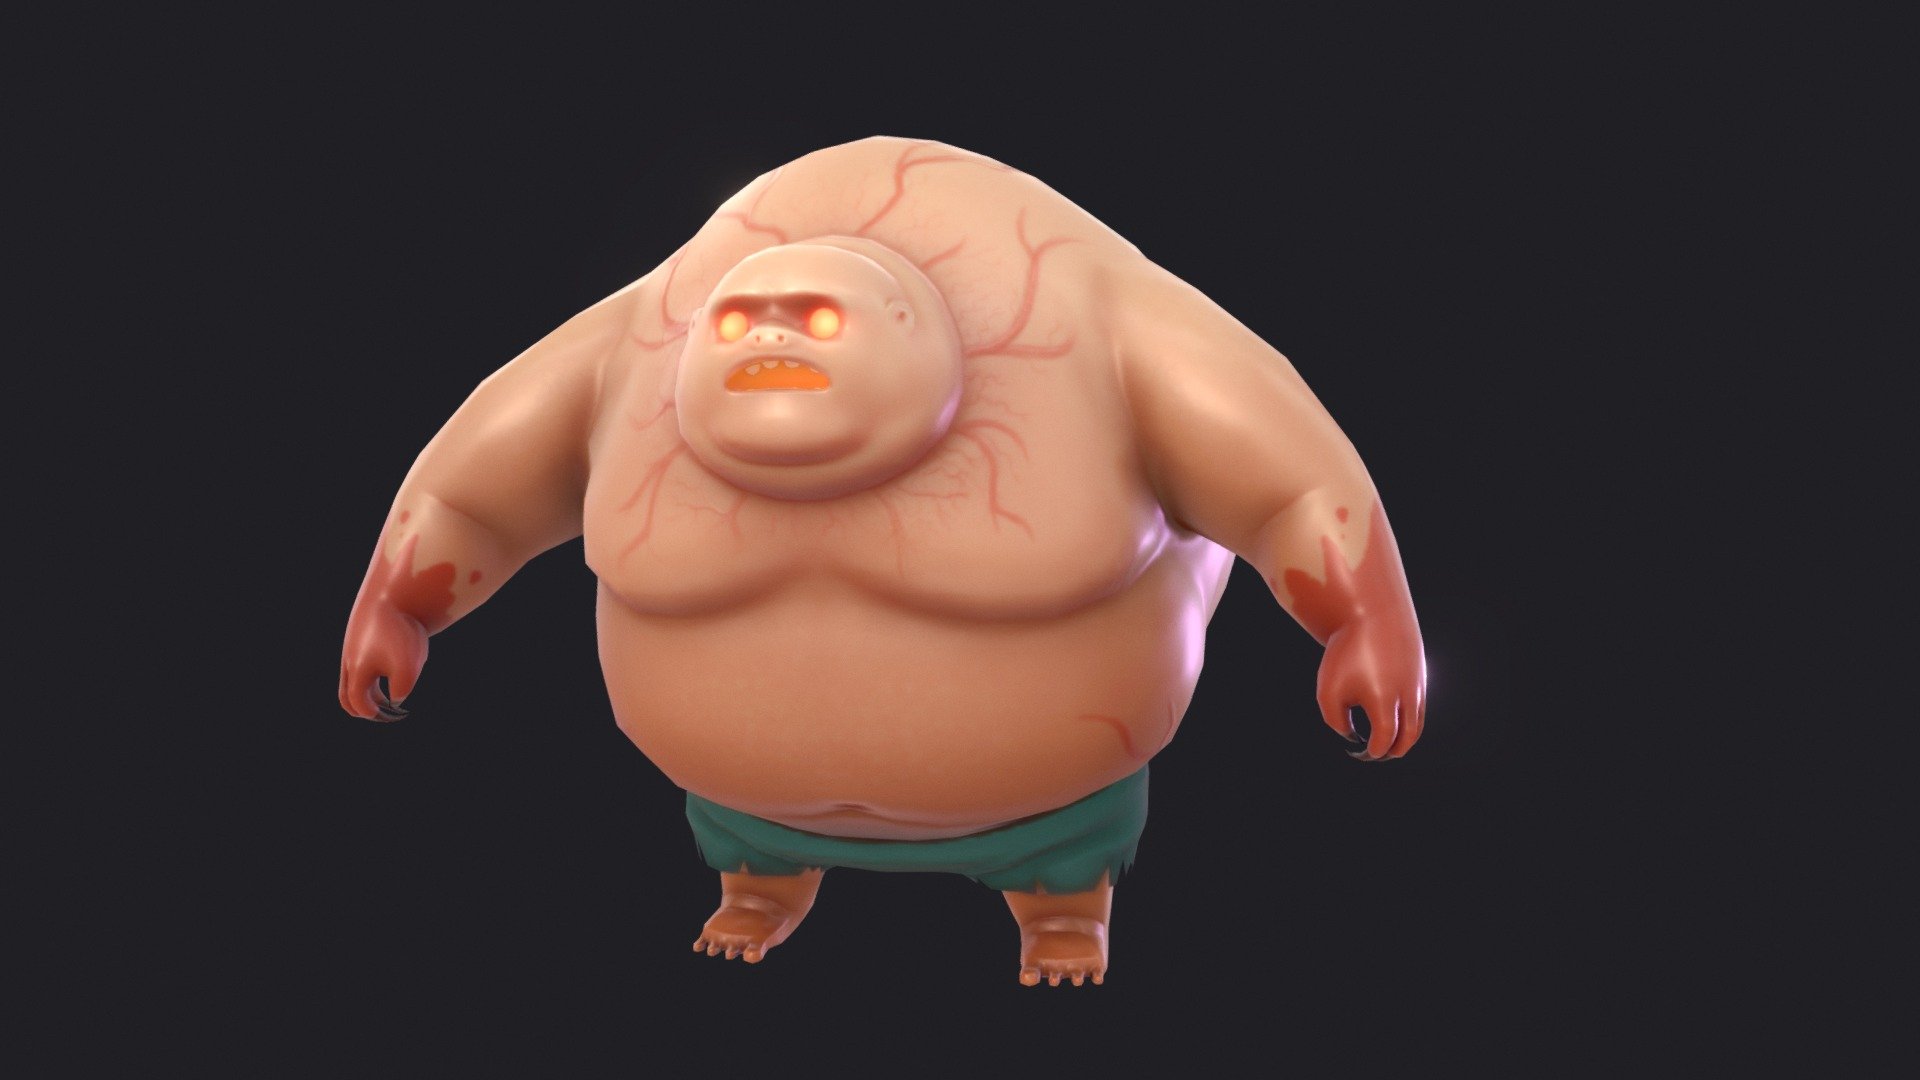 Fat Zom - 3D model by Mad (@prakasit) 3d model